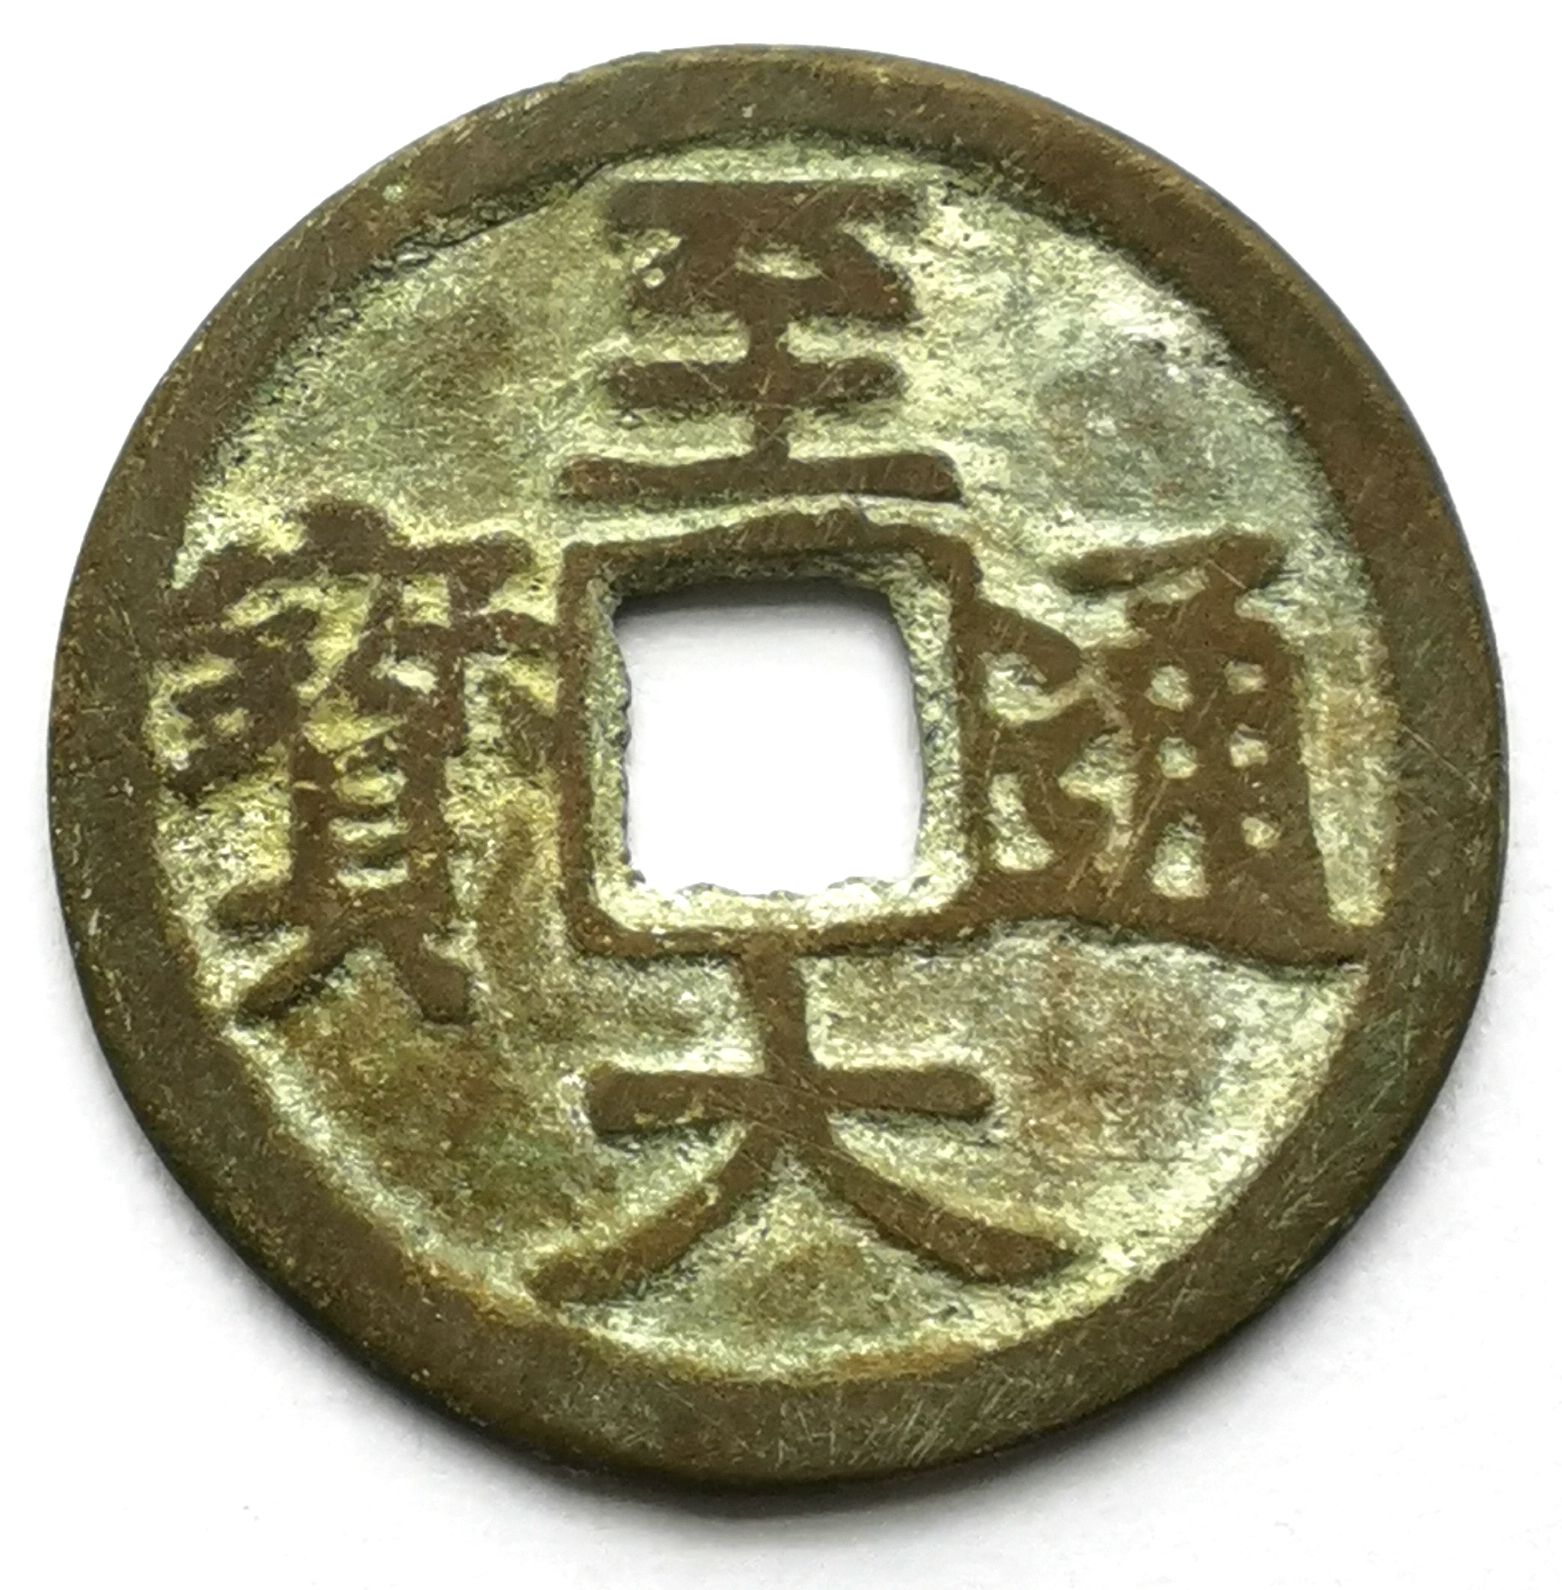 K3352, Zhi-Da Tong-Bao Coin, China Yuan Dynasty AD 1310, XF